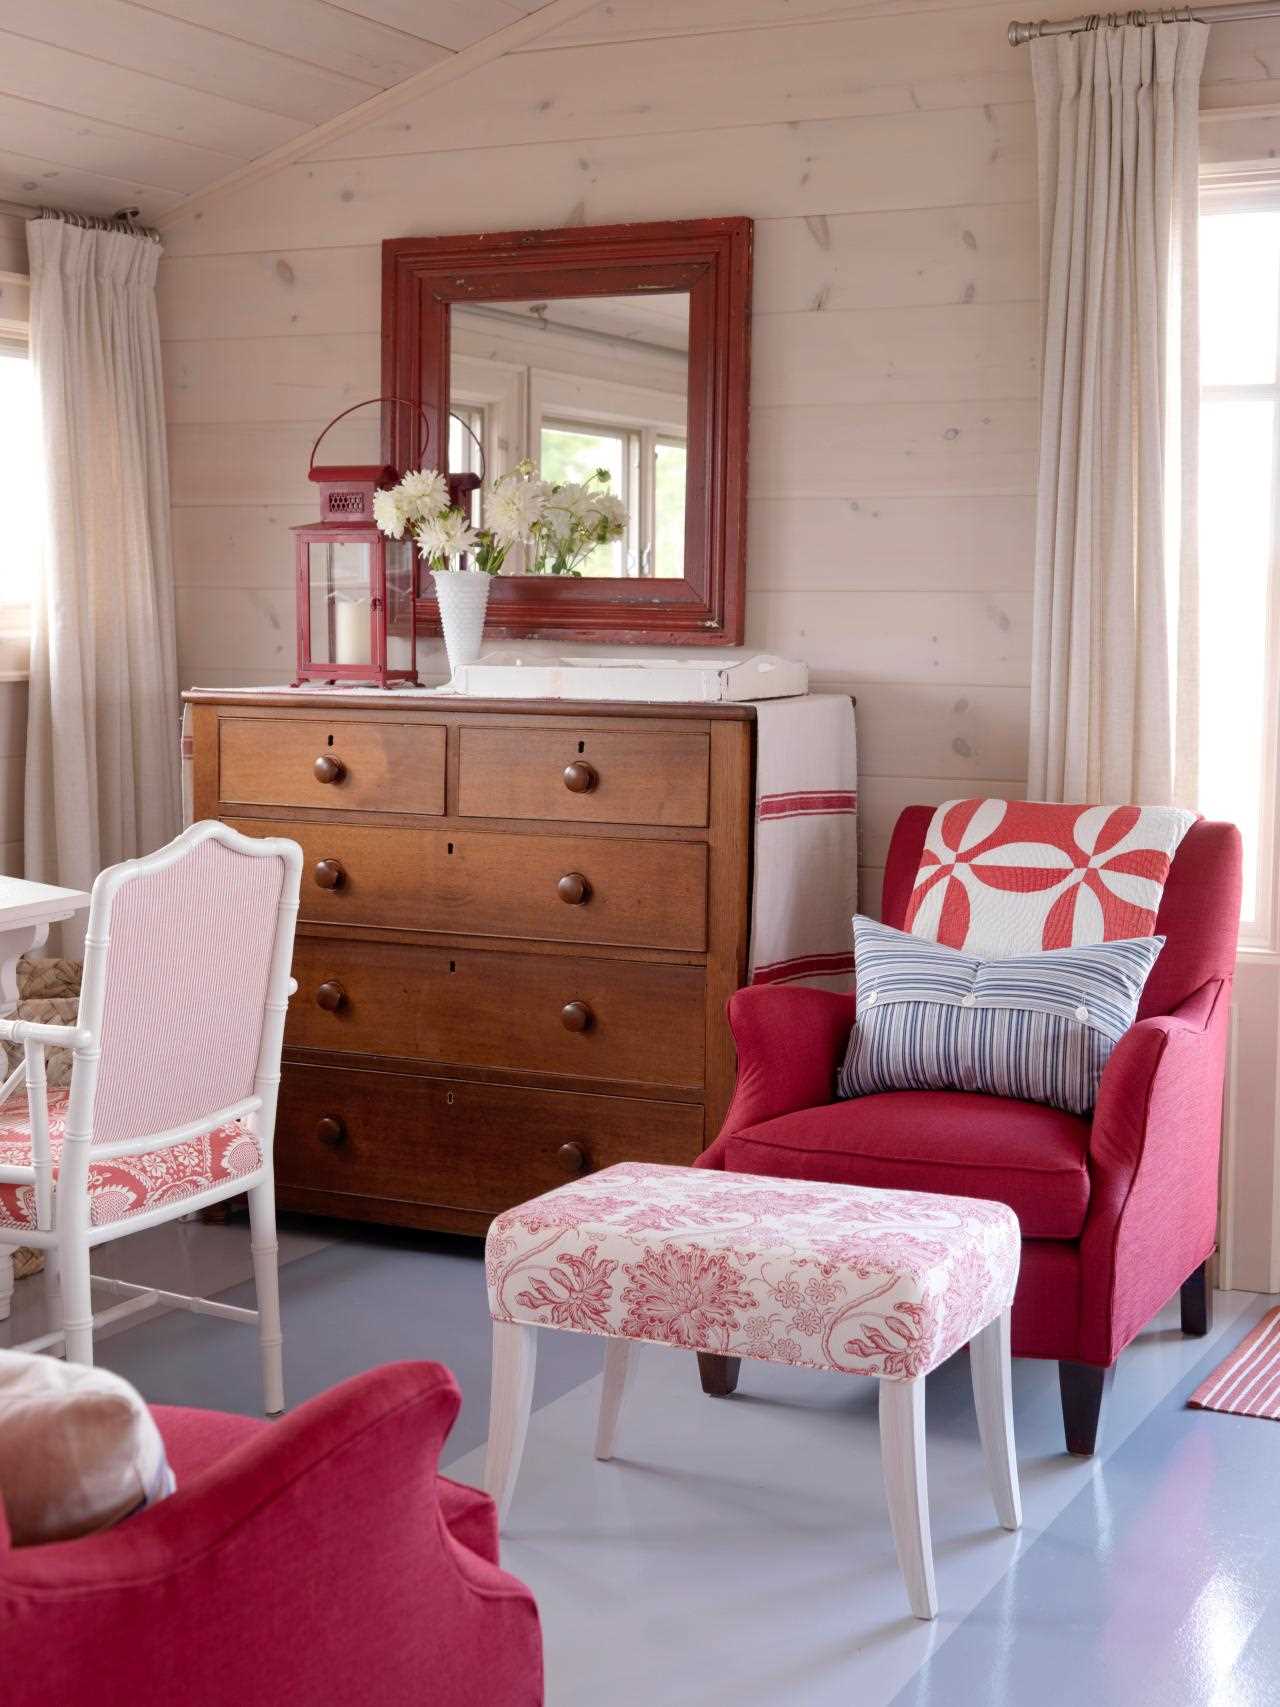 فكرة استخدام اللون الوردي في غرفة مصممة بشكل جميل